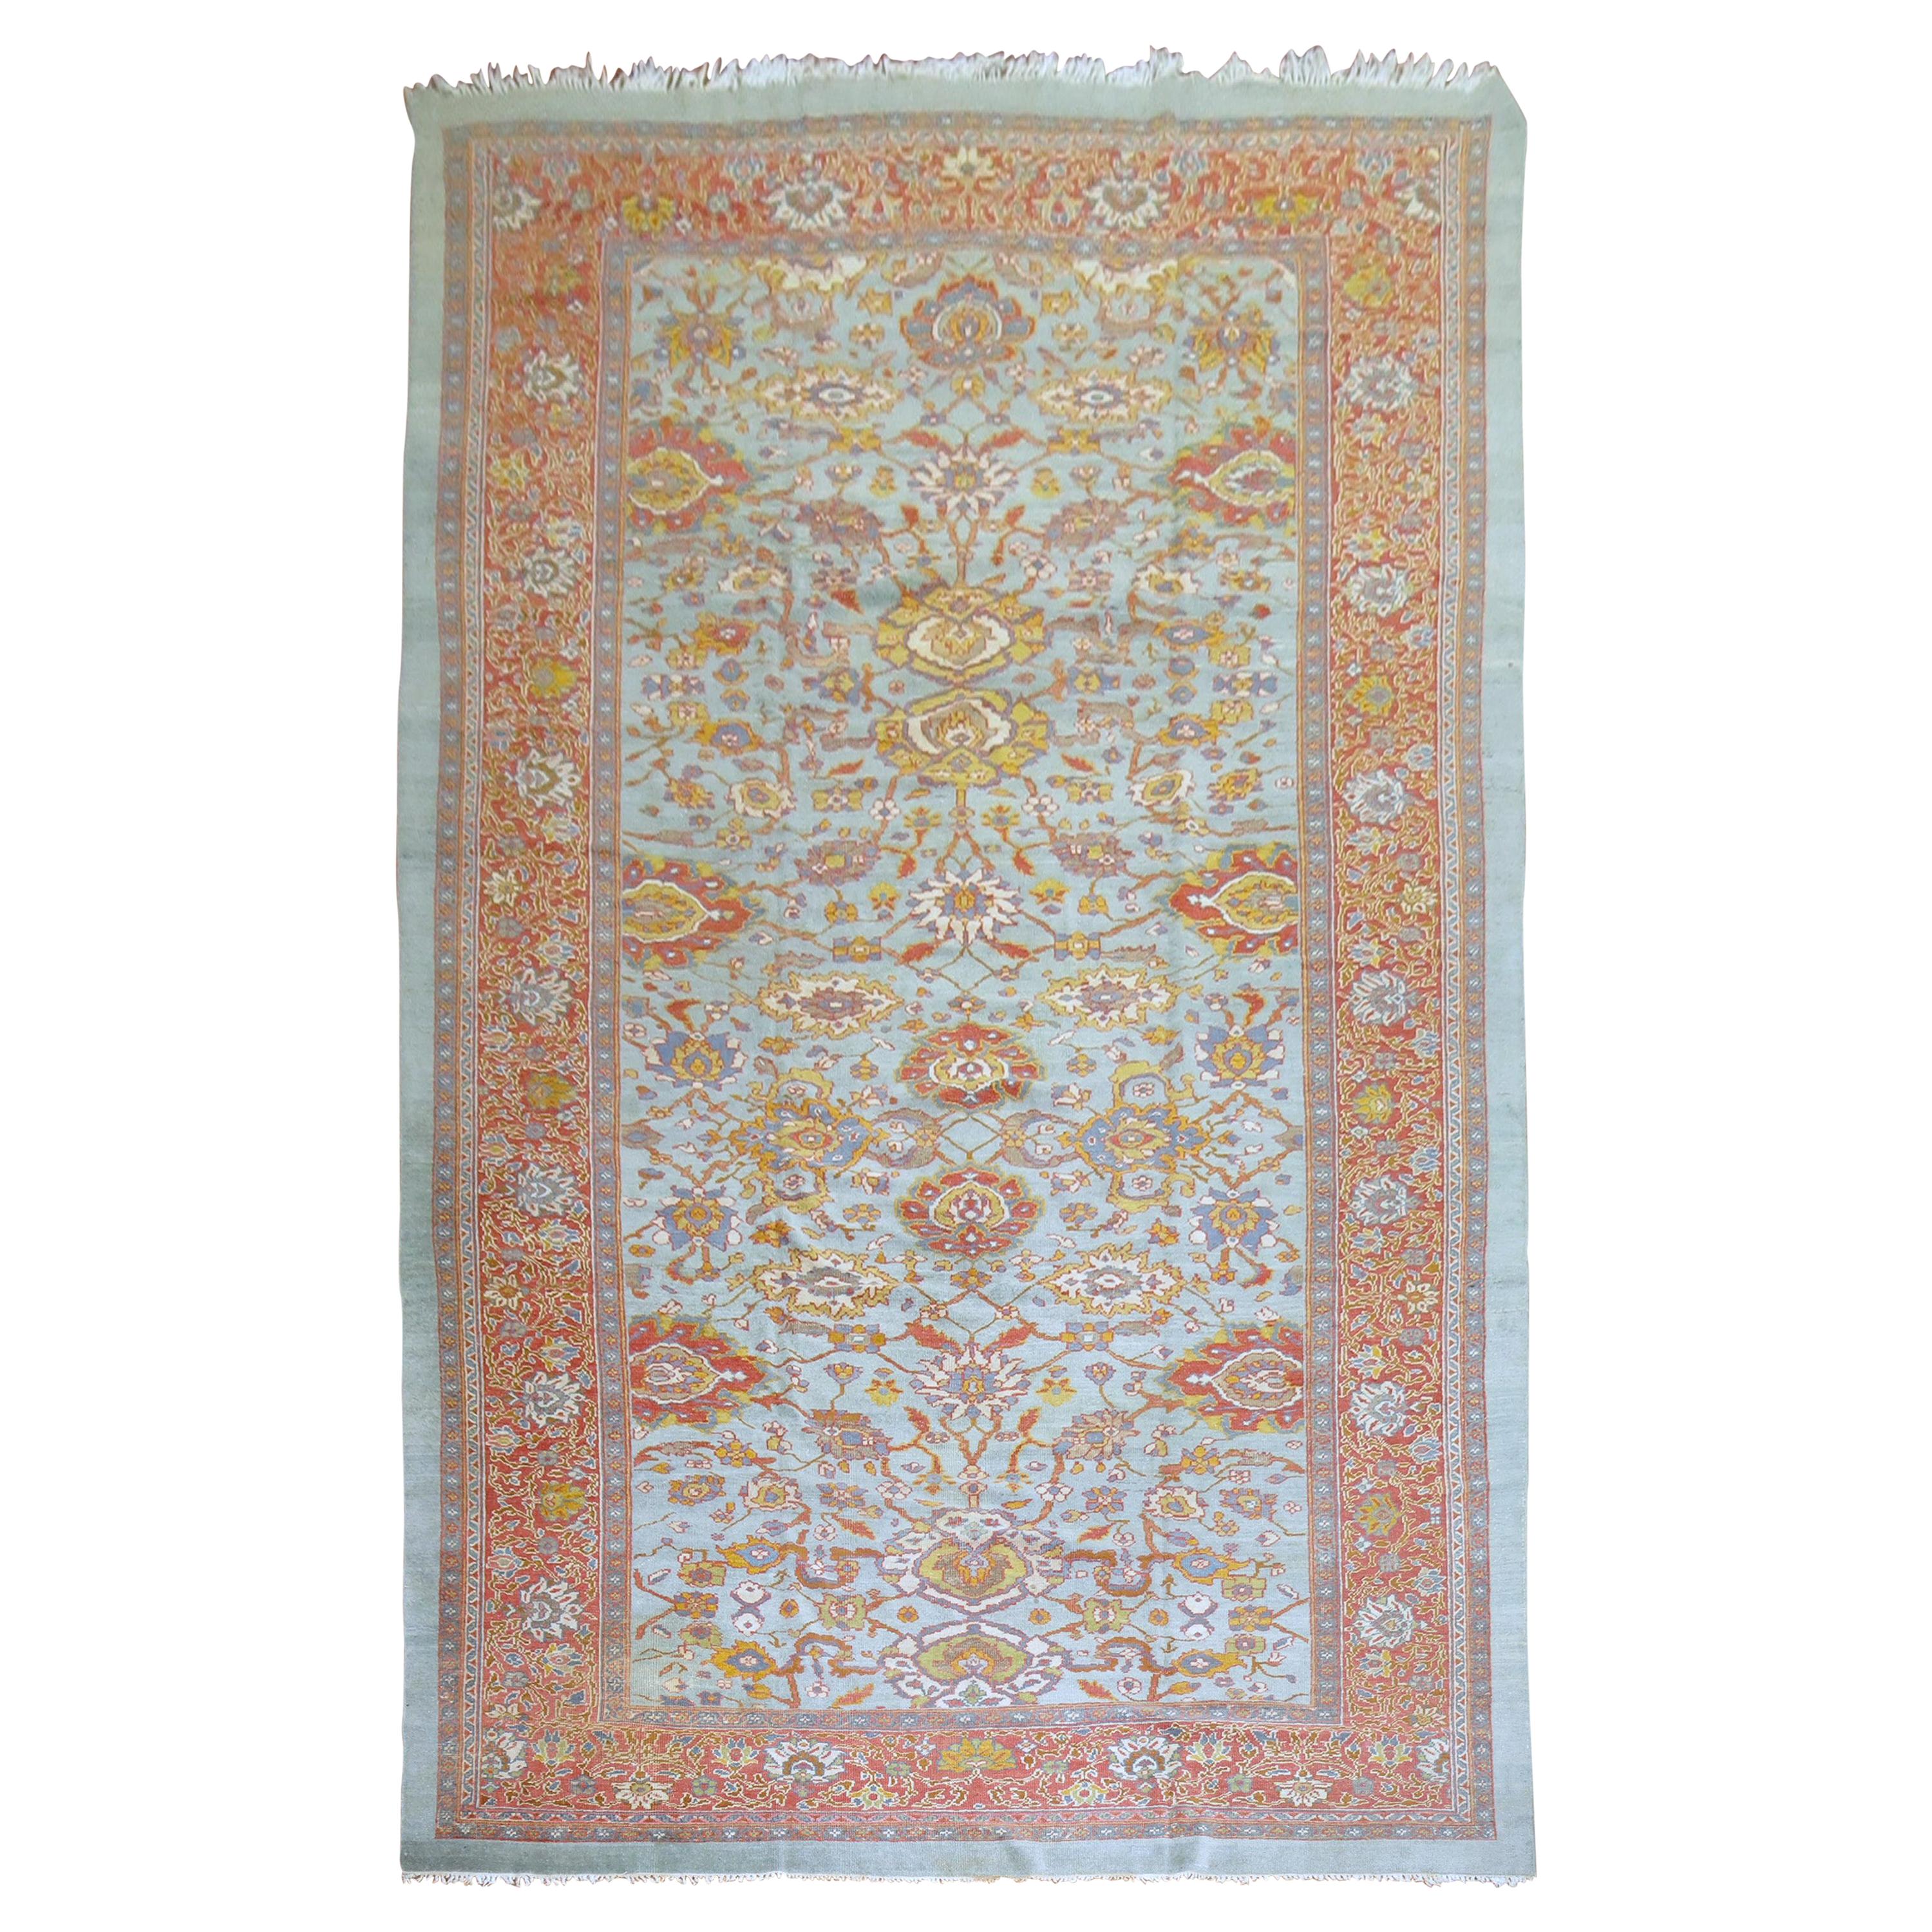 Antique Persian Sultanabad Carpet